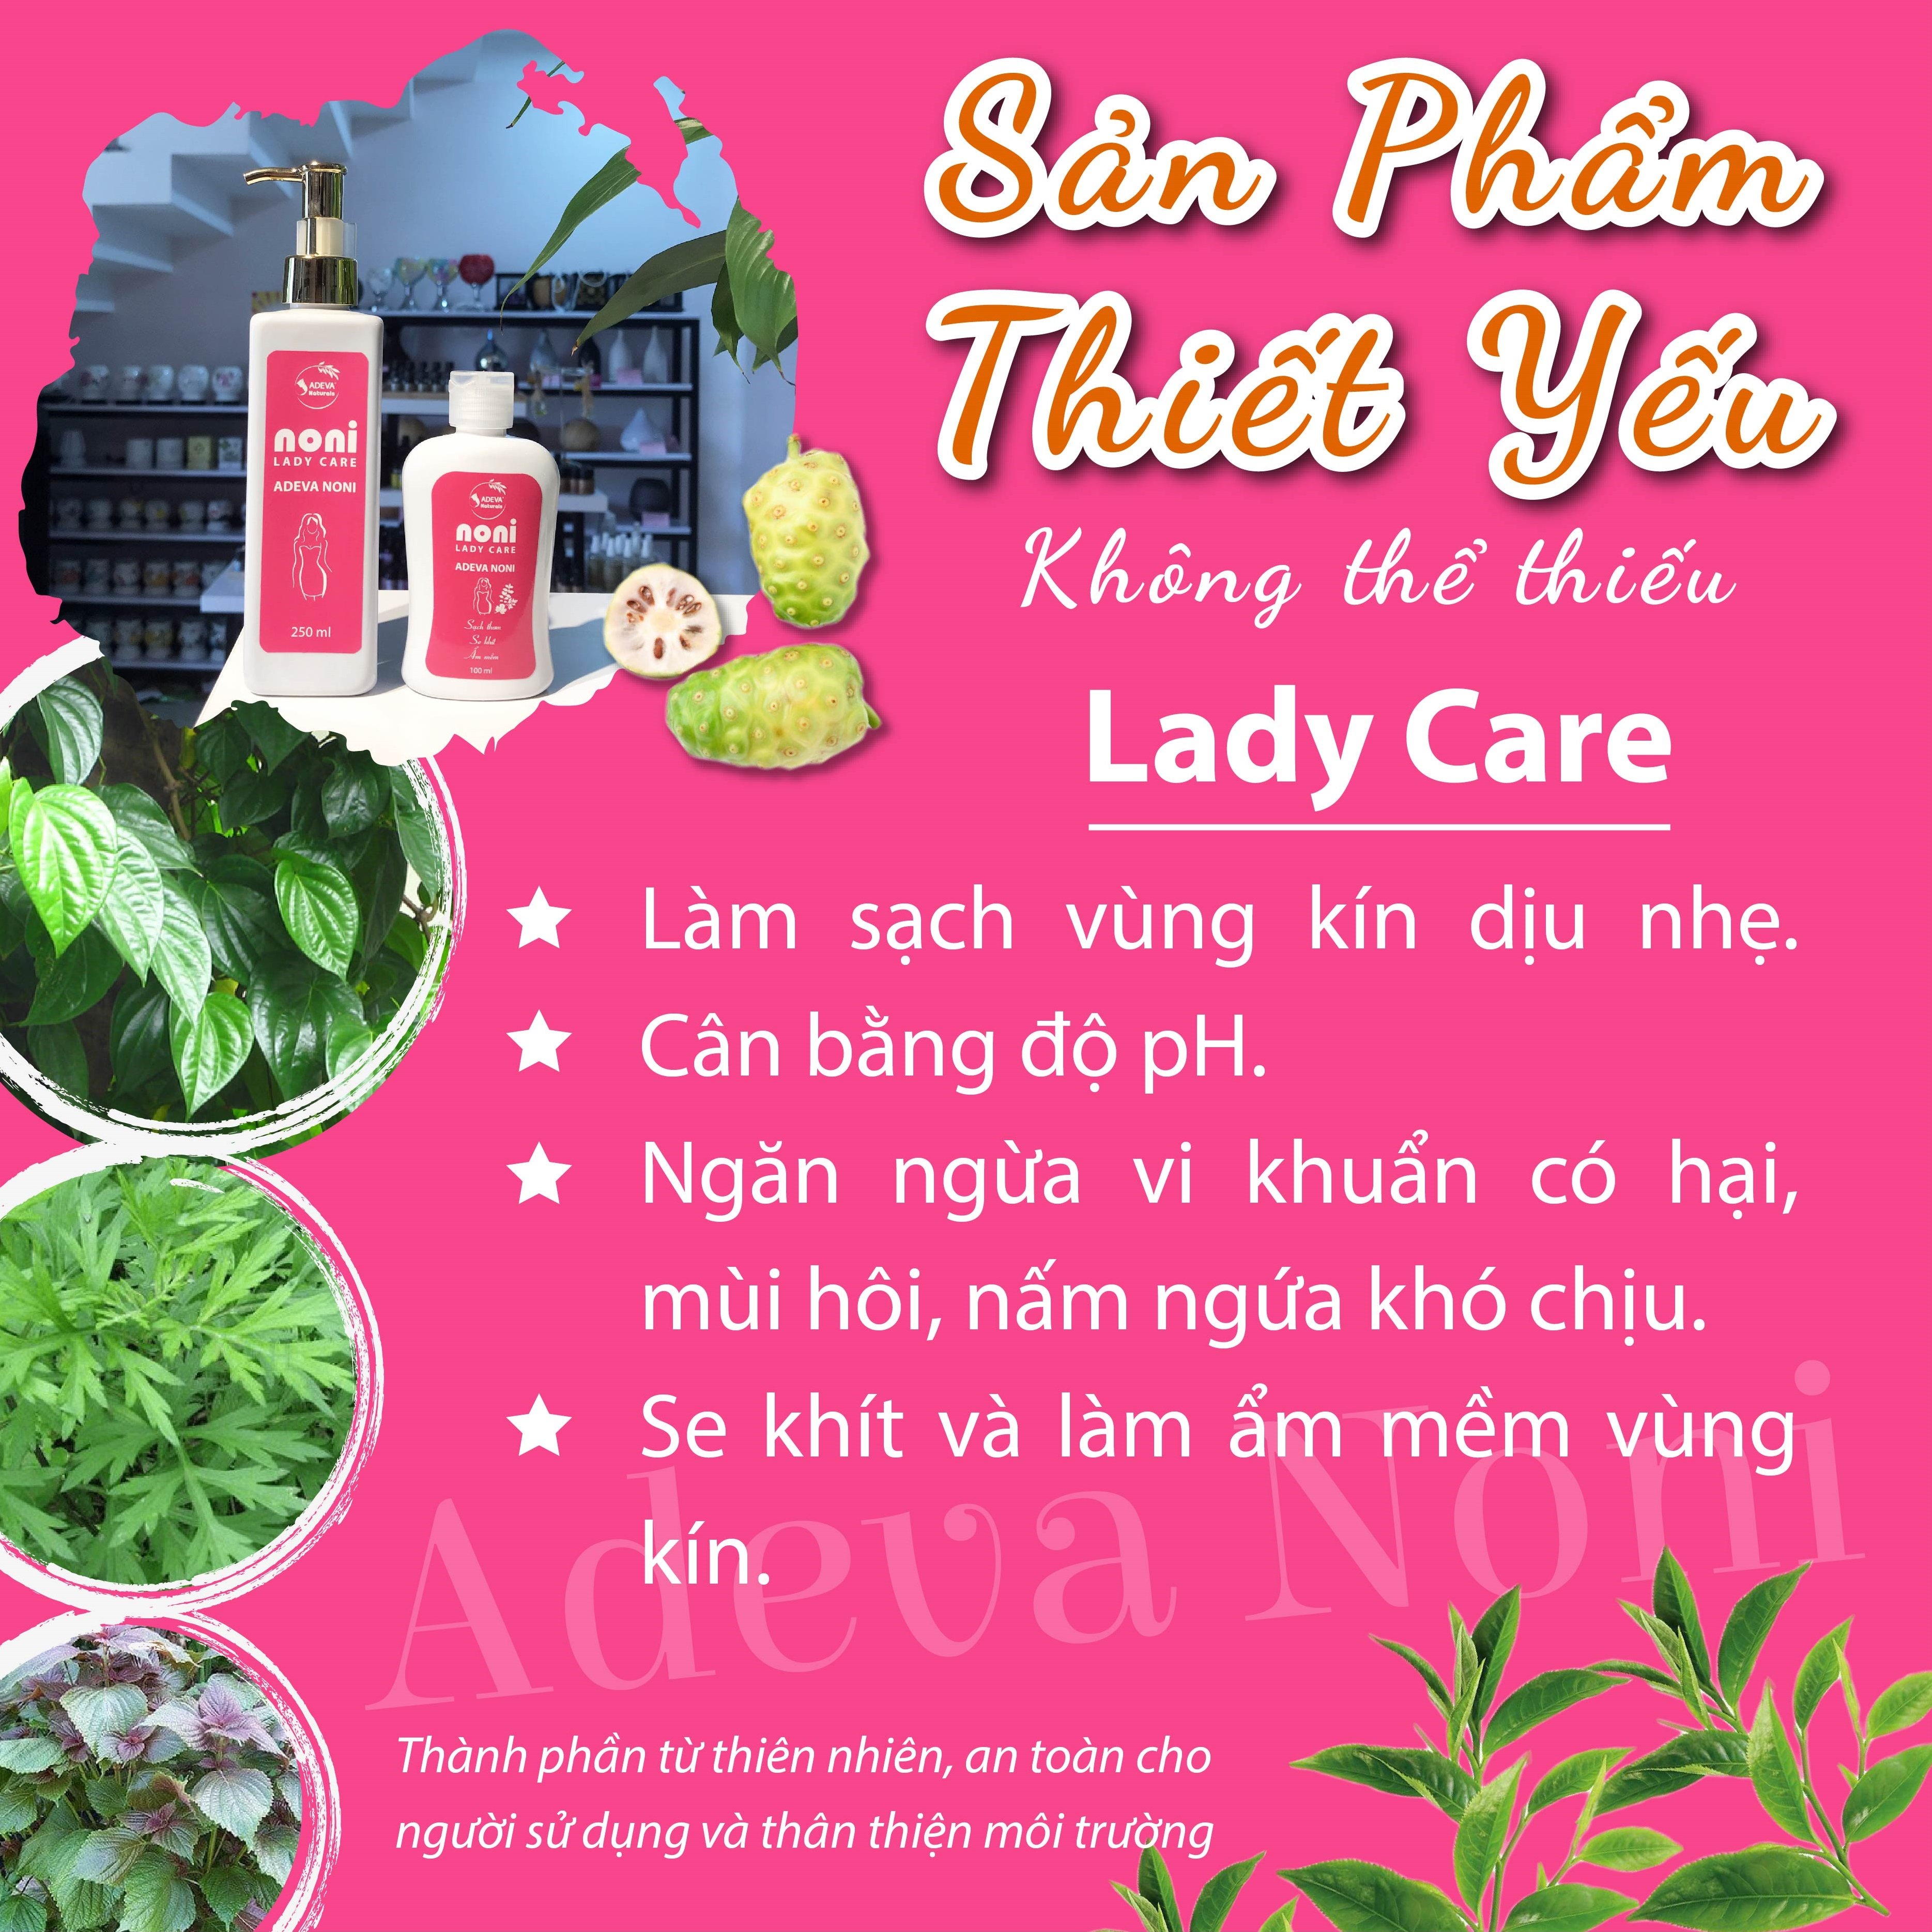 Dung dịch vệ sinh phụ nữ từ thảo dược thiên nhiên Adeva Noni - Sạch the mát, khử mùi, giảm viêm nhiễm phụ khoa, an toàn tuyệt đối cho cô bé của bạn